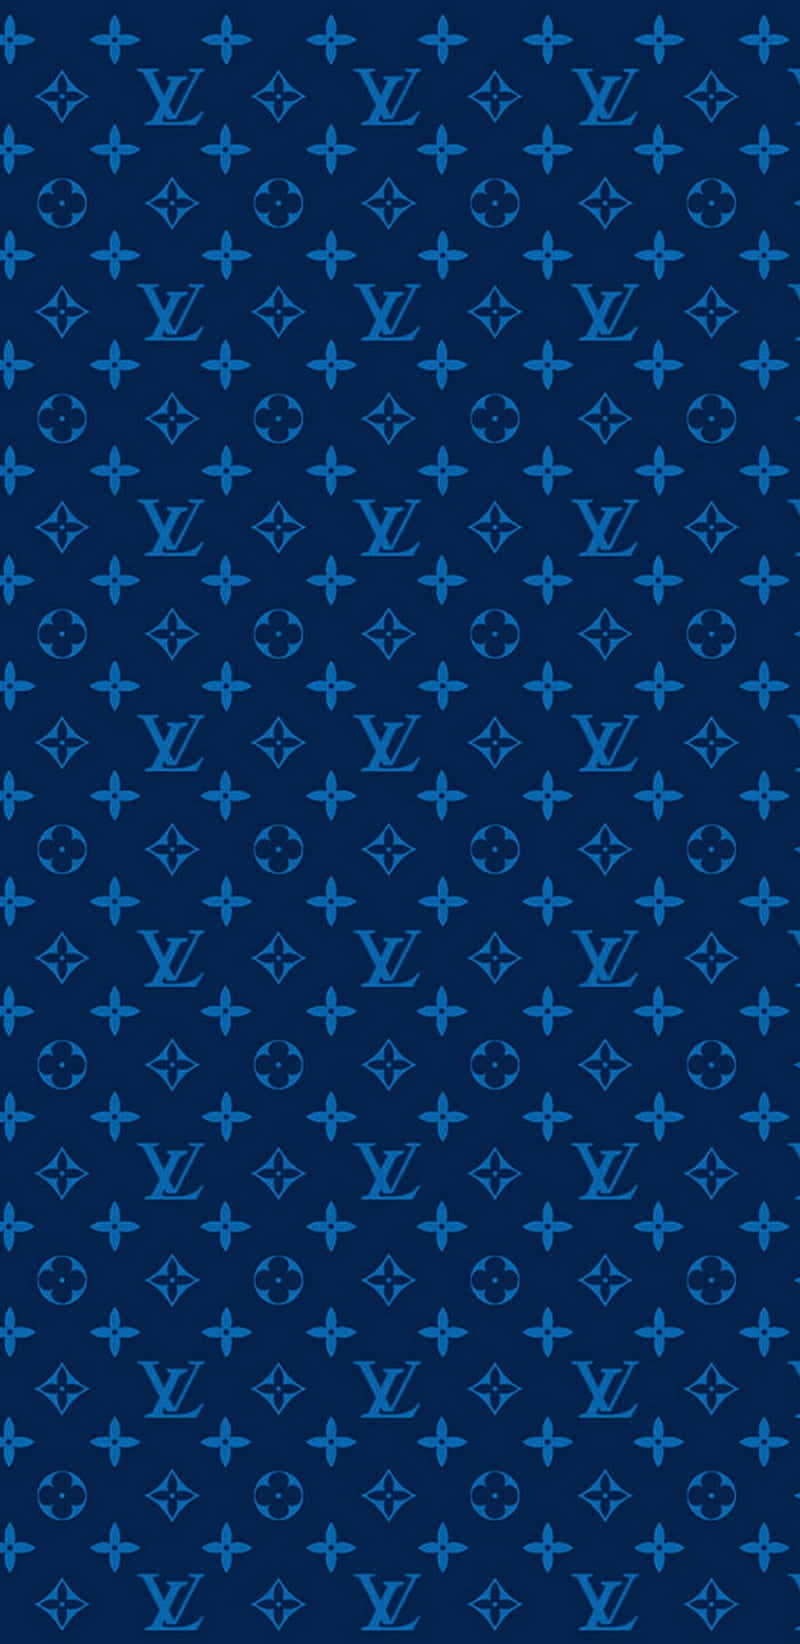 Louis Vuitton pattern  Louis vuitton pattern, Louis vuitton iphone  wallpaper, Blue wallpaper iphone